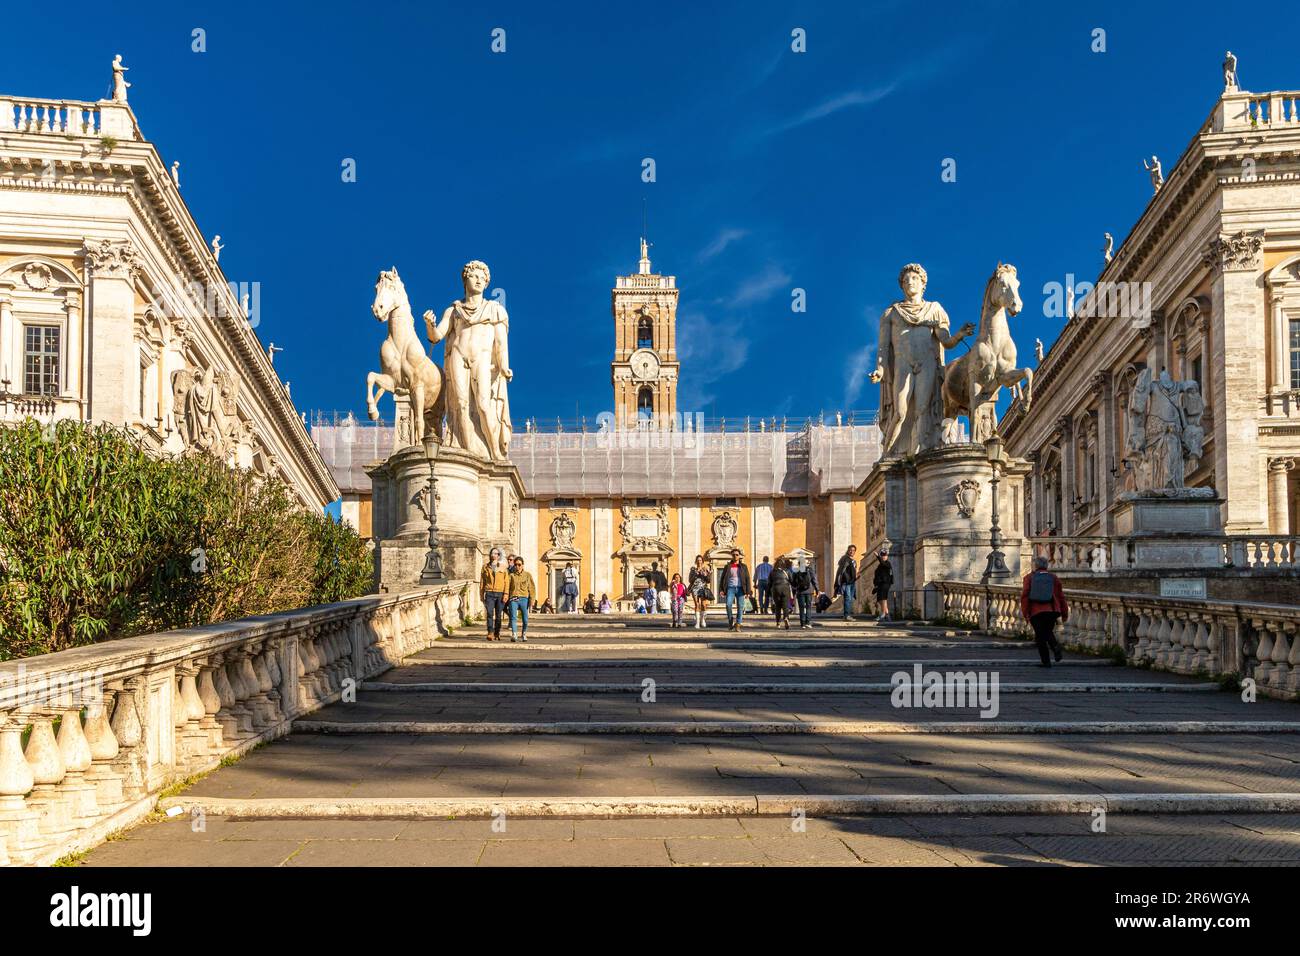 Die Stufenrampe führt zur Piazza del Campidoglio, mit den kolossalen Statuen Castor und Pollux auf dem Gipfel, Kapitolshügel, Rom, Italien Stockfoto